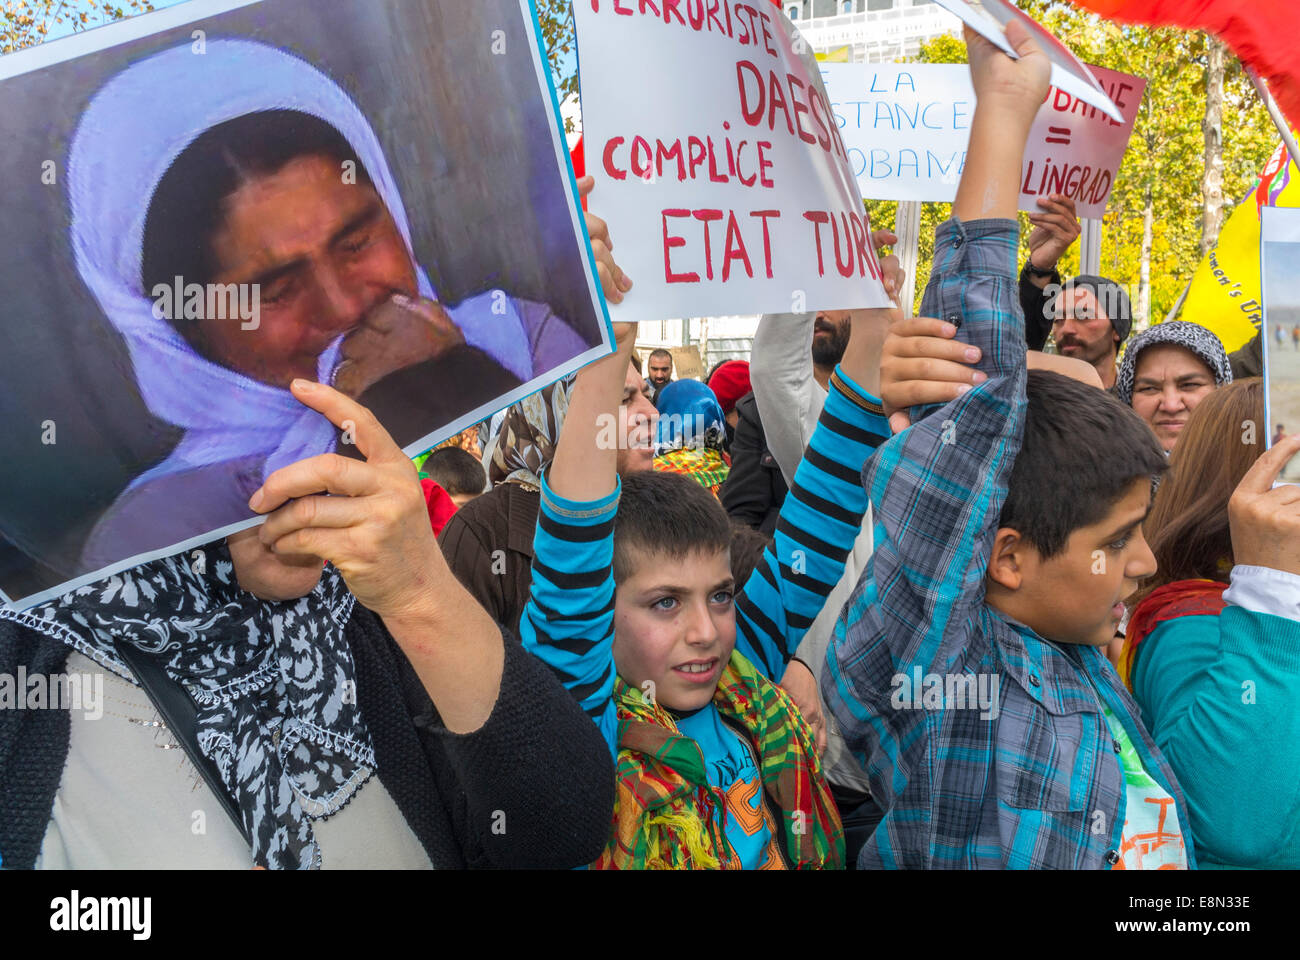 Paris, France. Manifestation publique, les Kurdes irakiens protestant contre le Daesh Djhadiste en Syrie et en Irak. Foule, enfants, refuges manifestants porteurs de panneaux de protestation, manifestations en plein air, immigrants Europe Banque D'Images